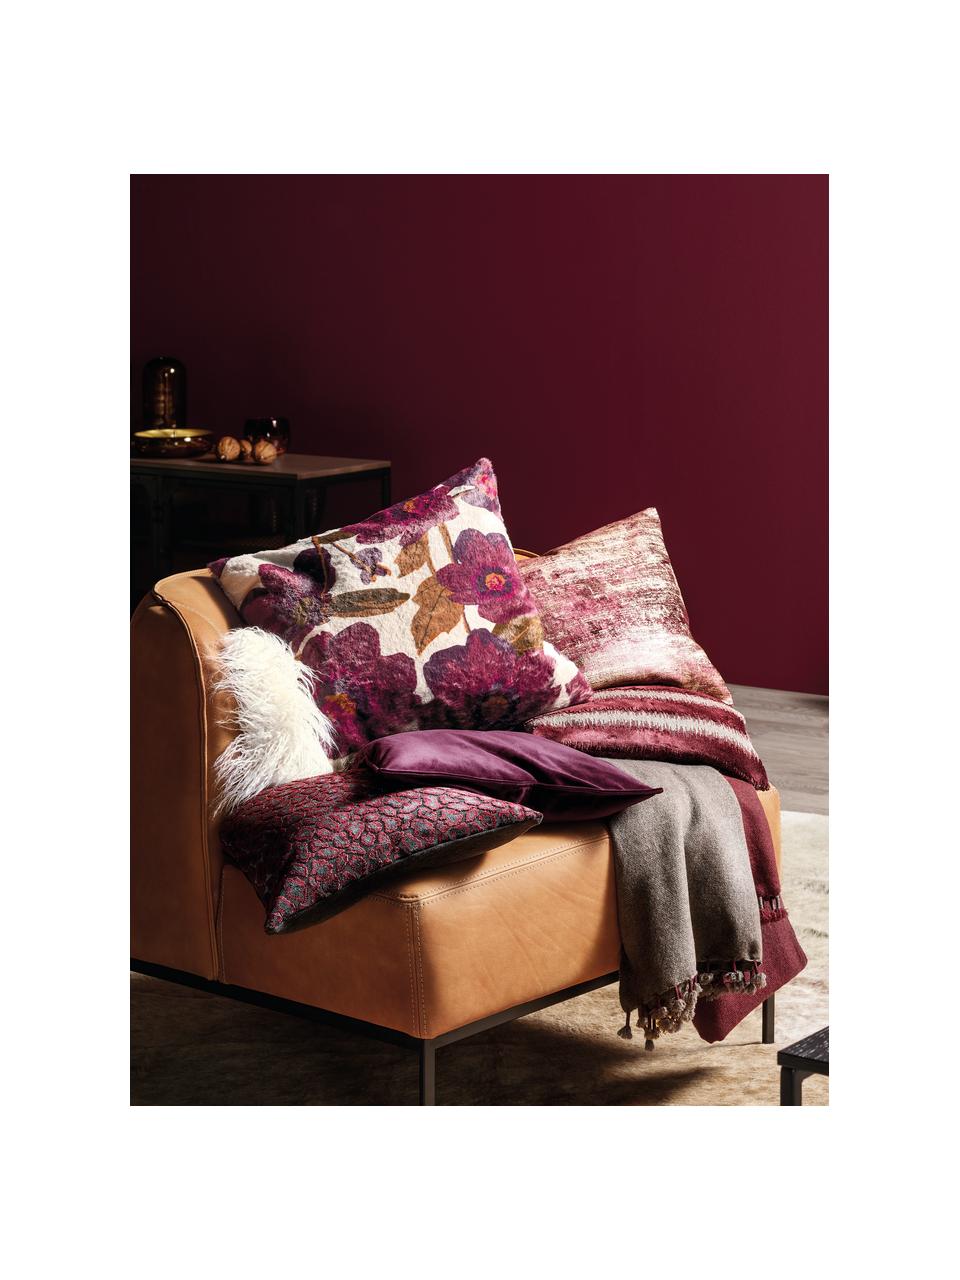 Poszewka na poduszkę Maite, Bawełna, Biały, lila, pomarańczowy, S 50 x D 50 cm